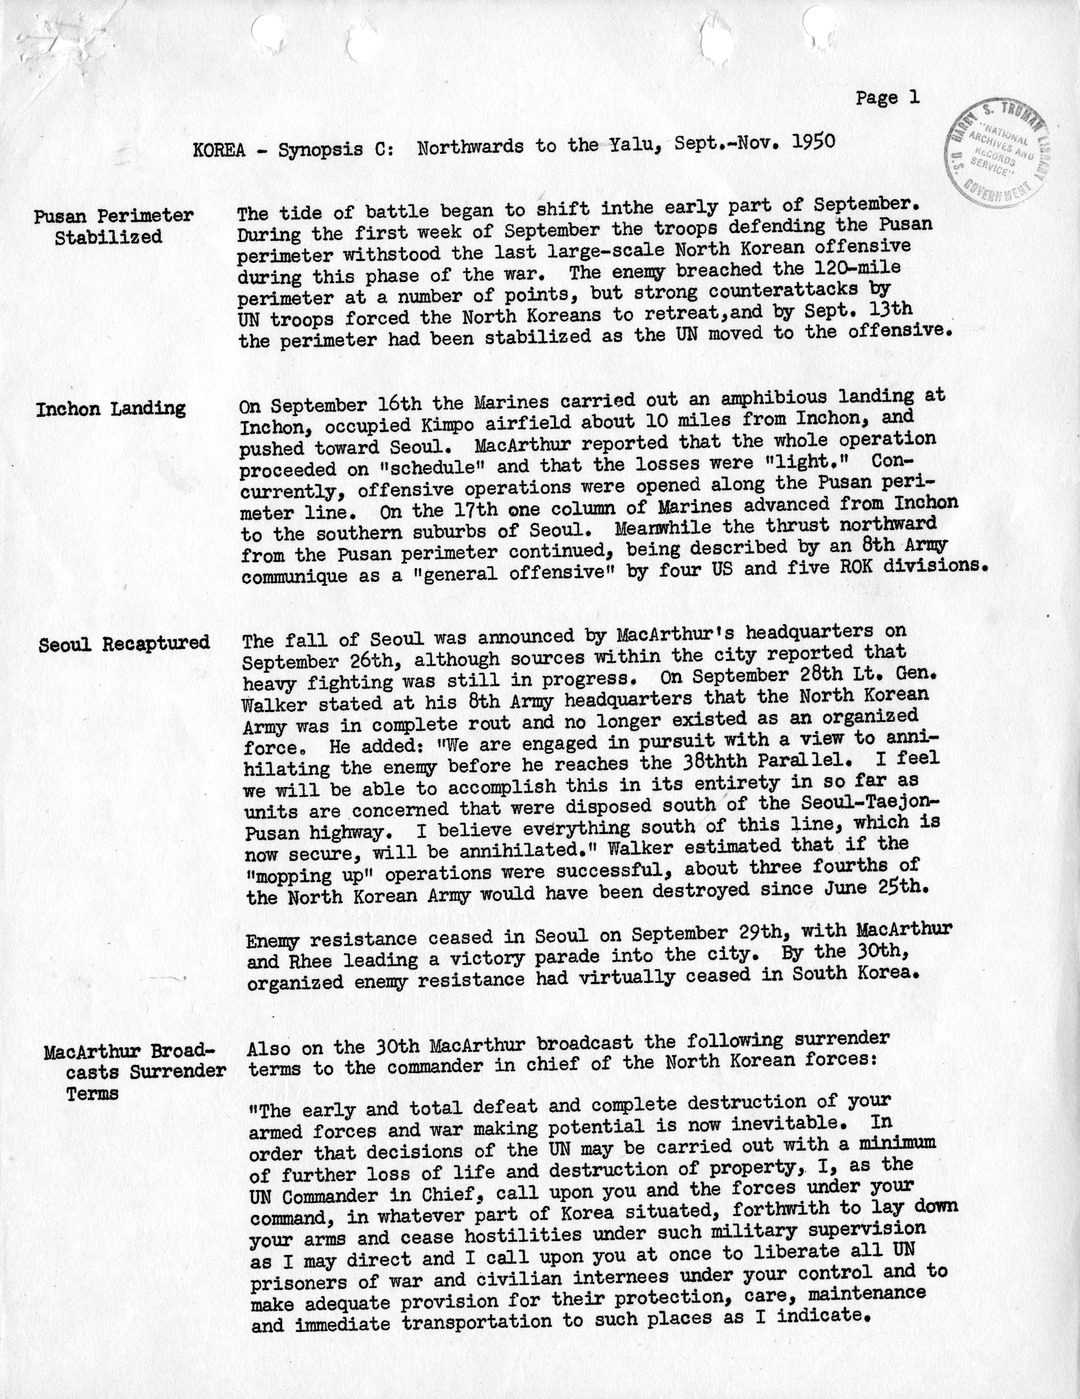 Synopsis C, Korea - Northwards to the Yalu, September-November, 1950